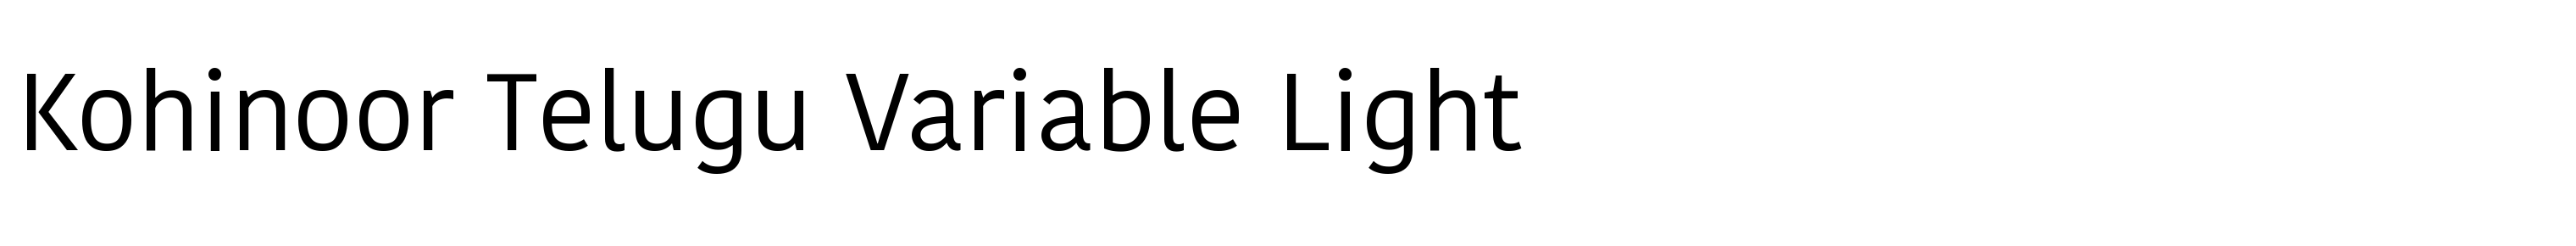 Kohinoor Telugu Variable Light